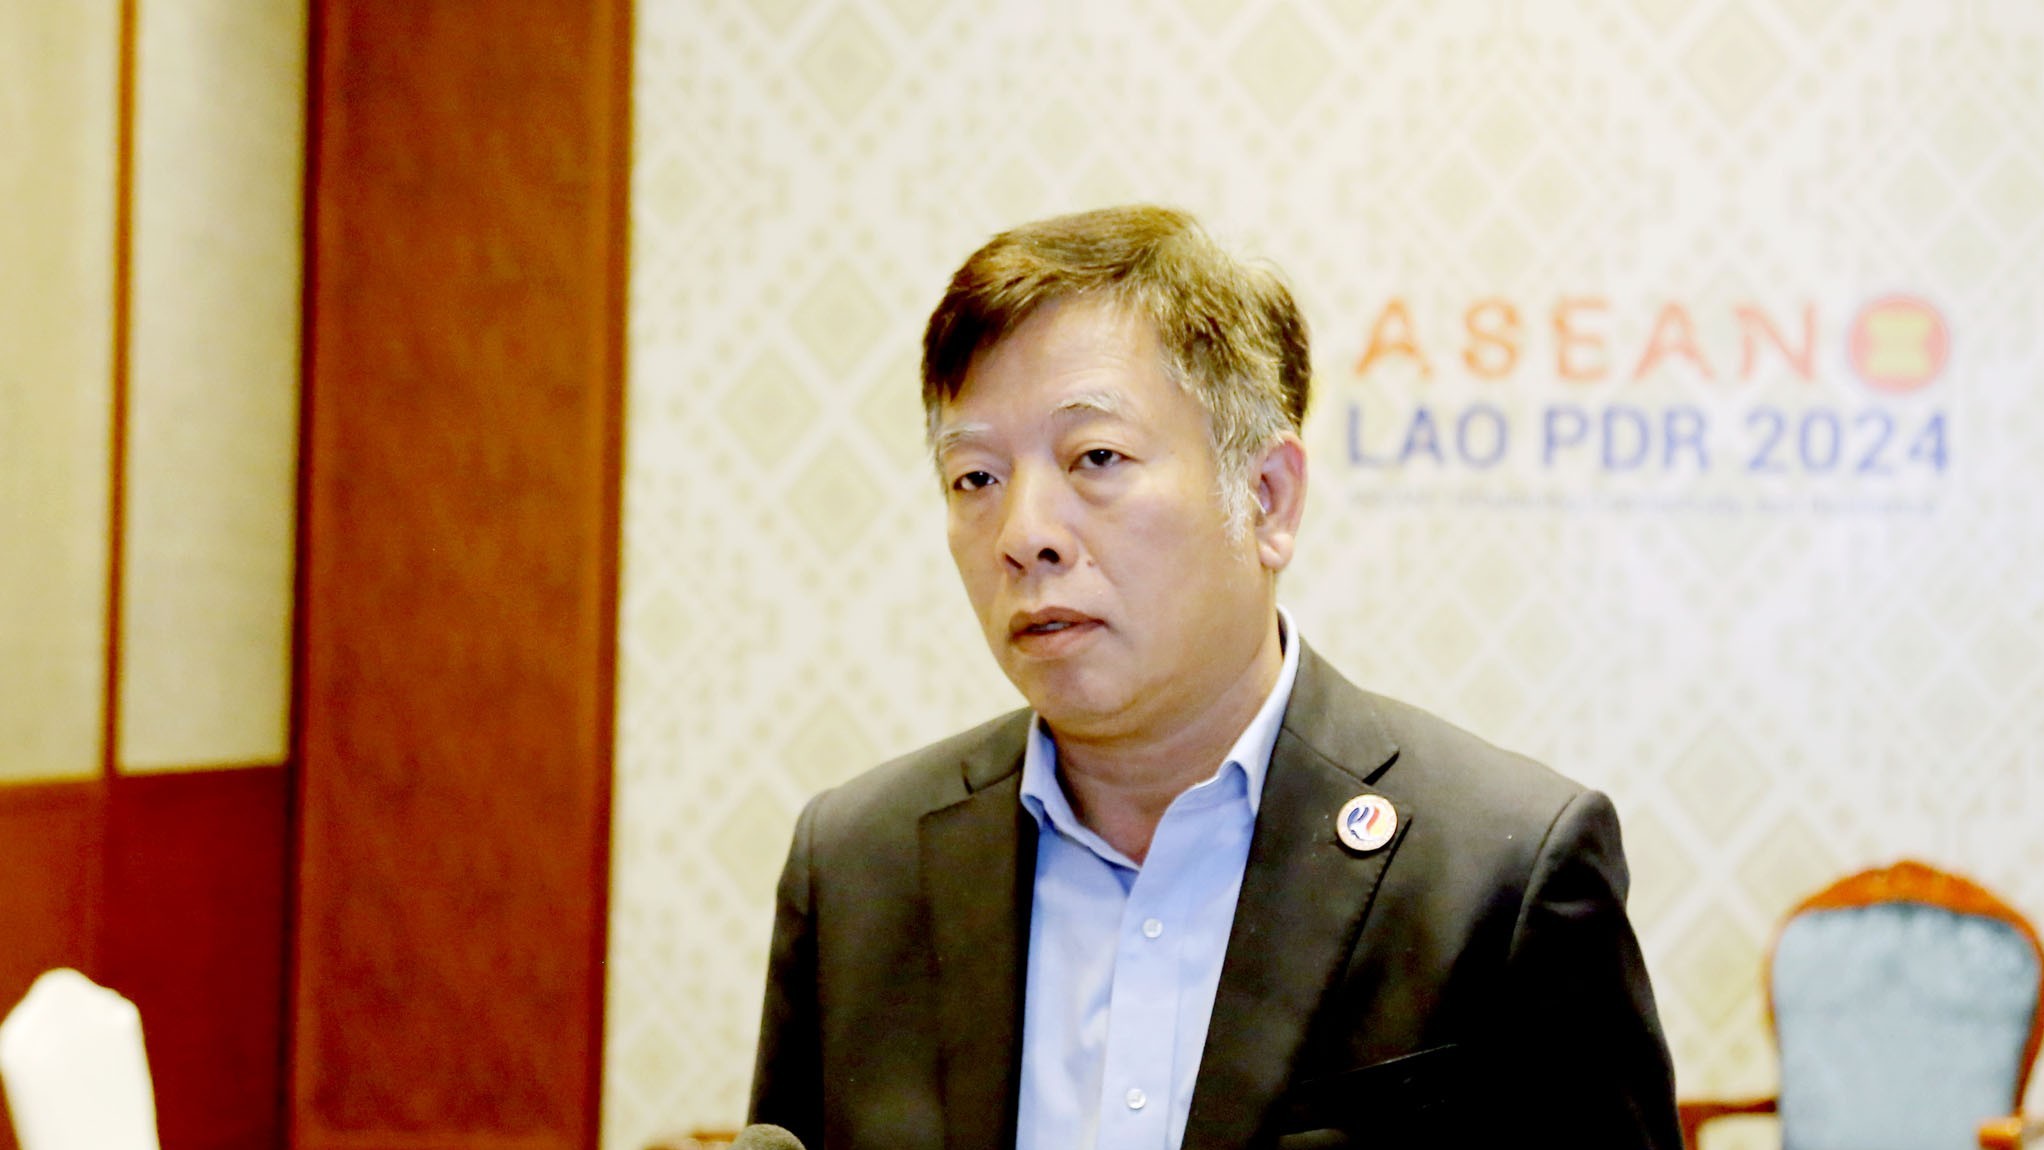 AMM' Retreat reaps important results: Ambassador Vu Ho